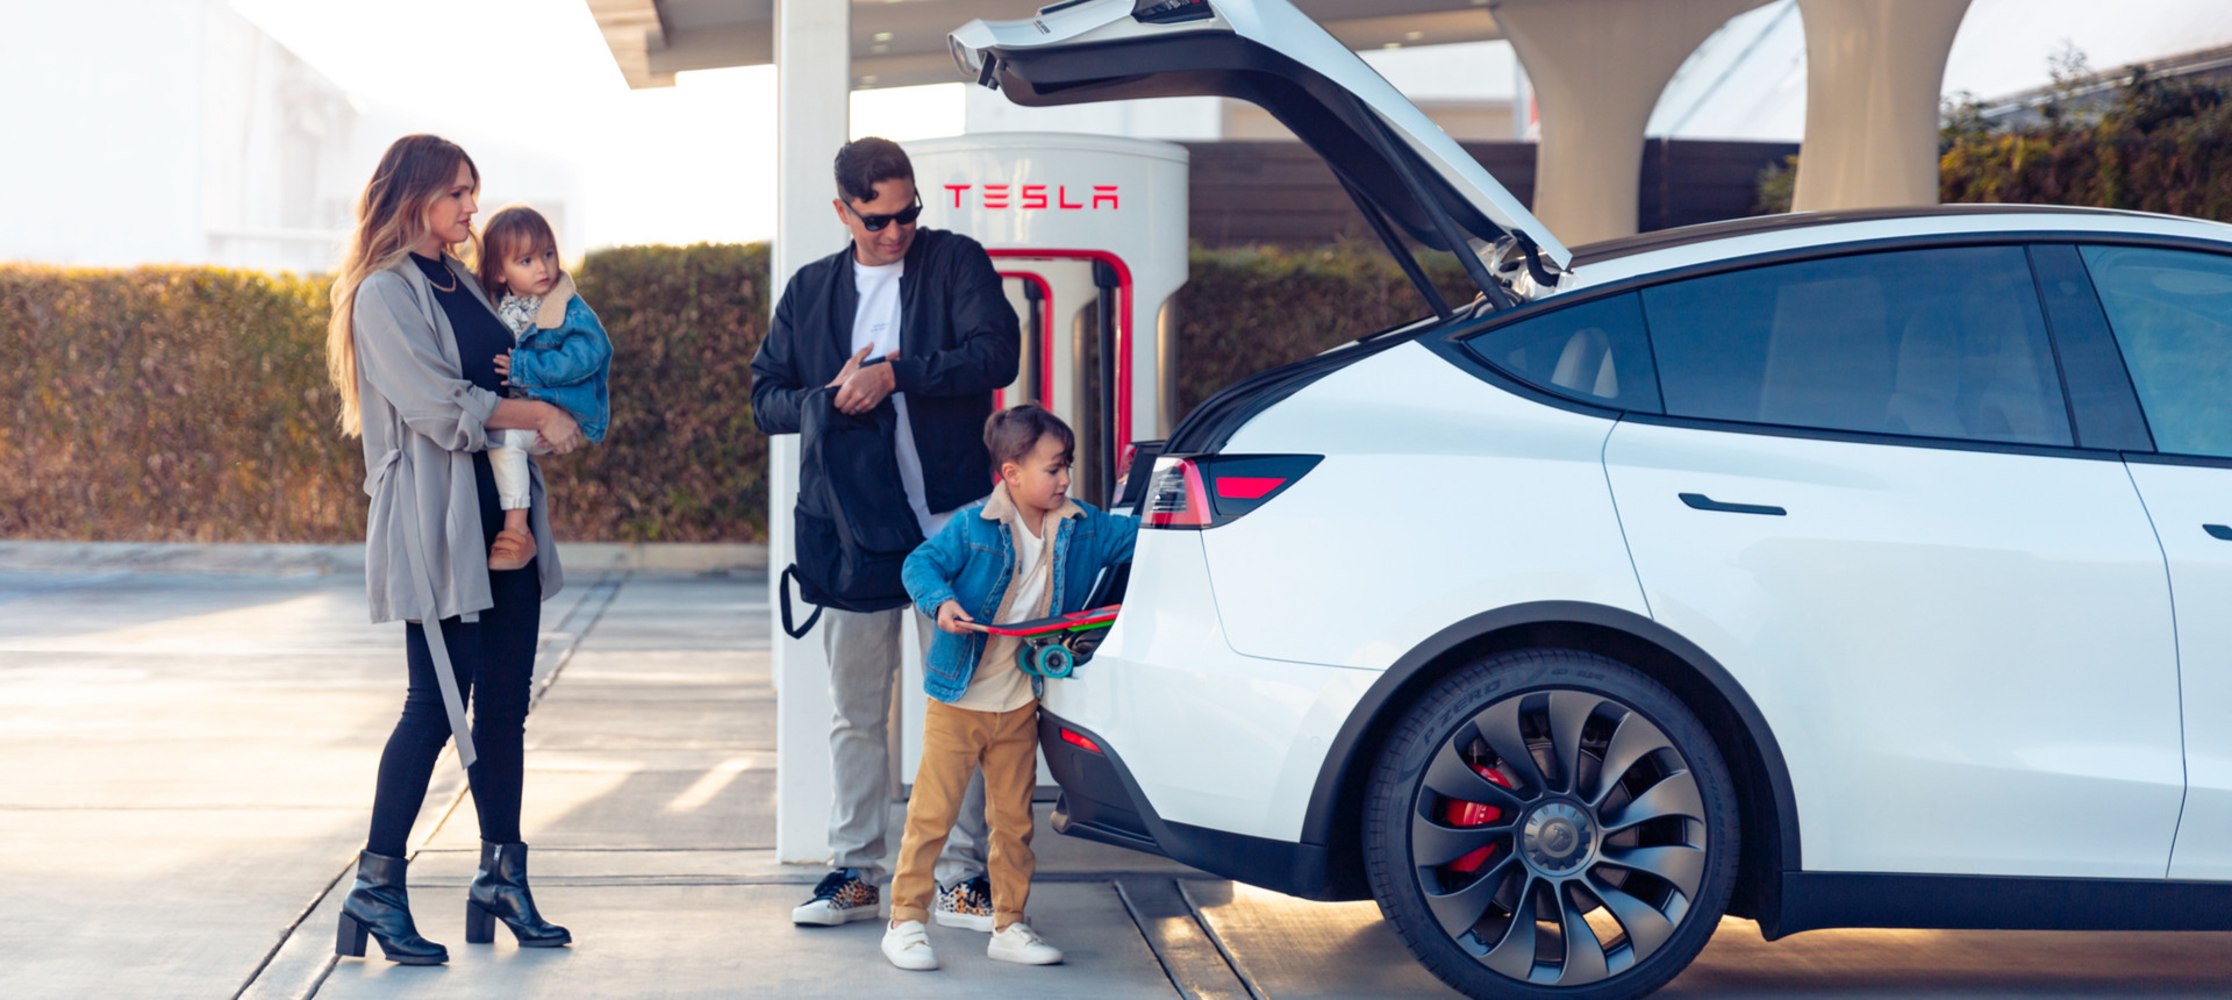 Družina skupaj polni vozilo Tesla. 